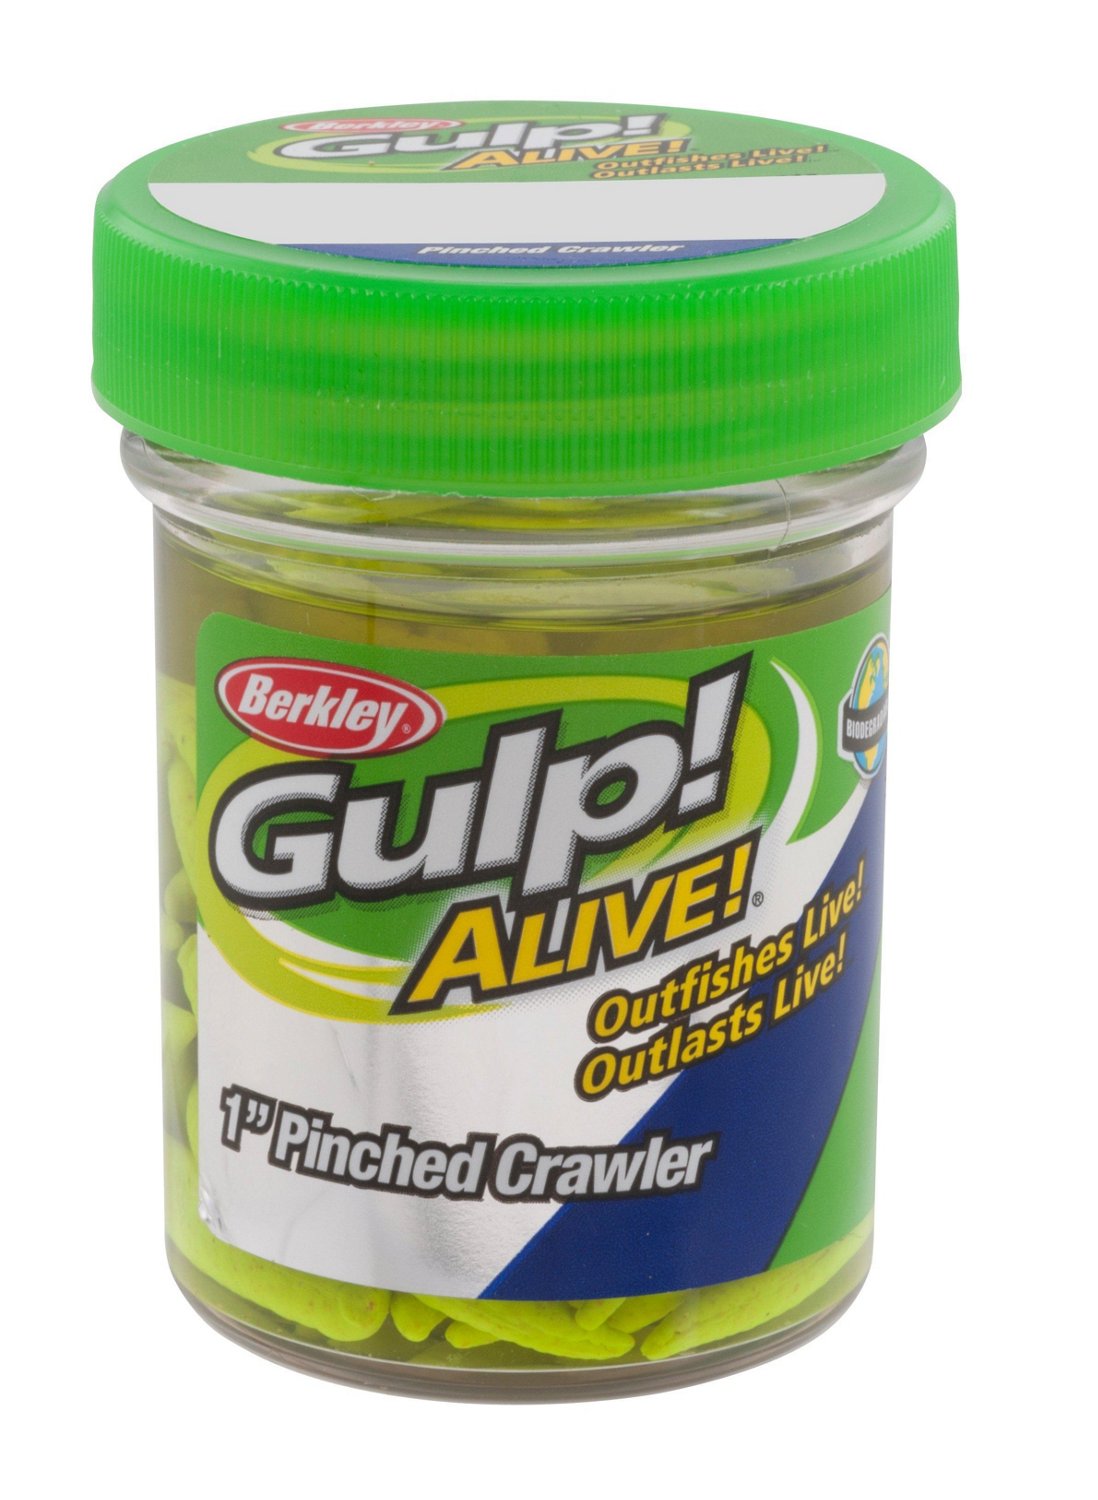 Berkley Gulp Alive 1 Pinched Crawler Bait Jar